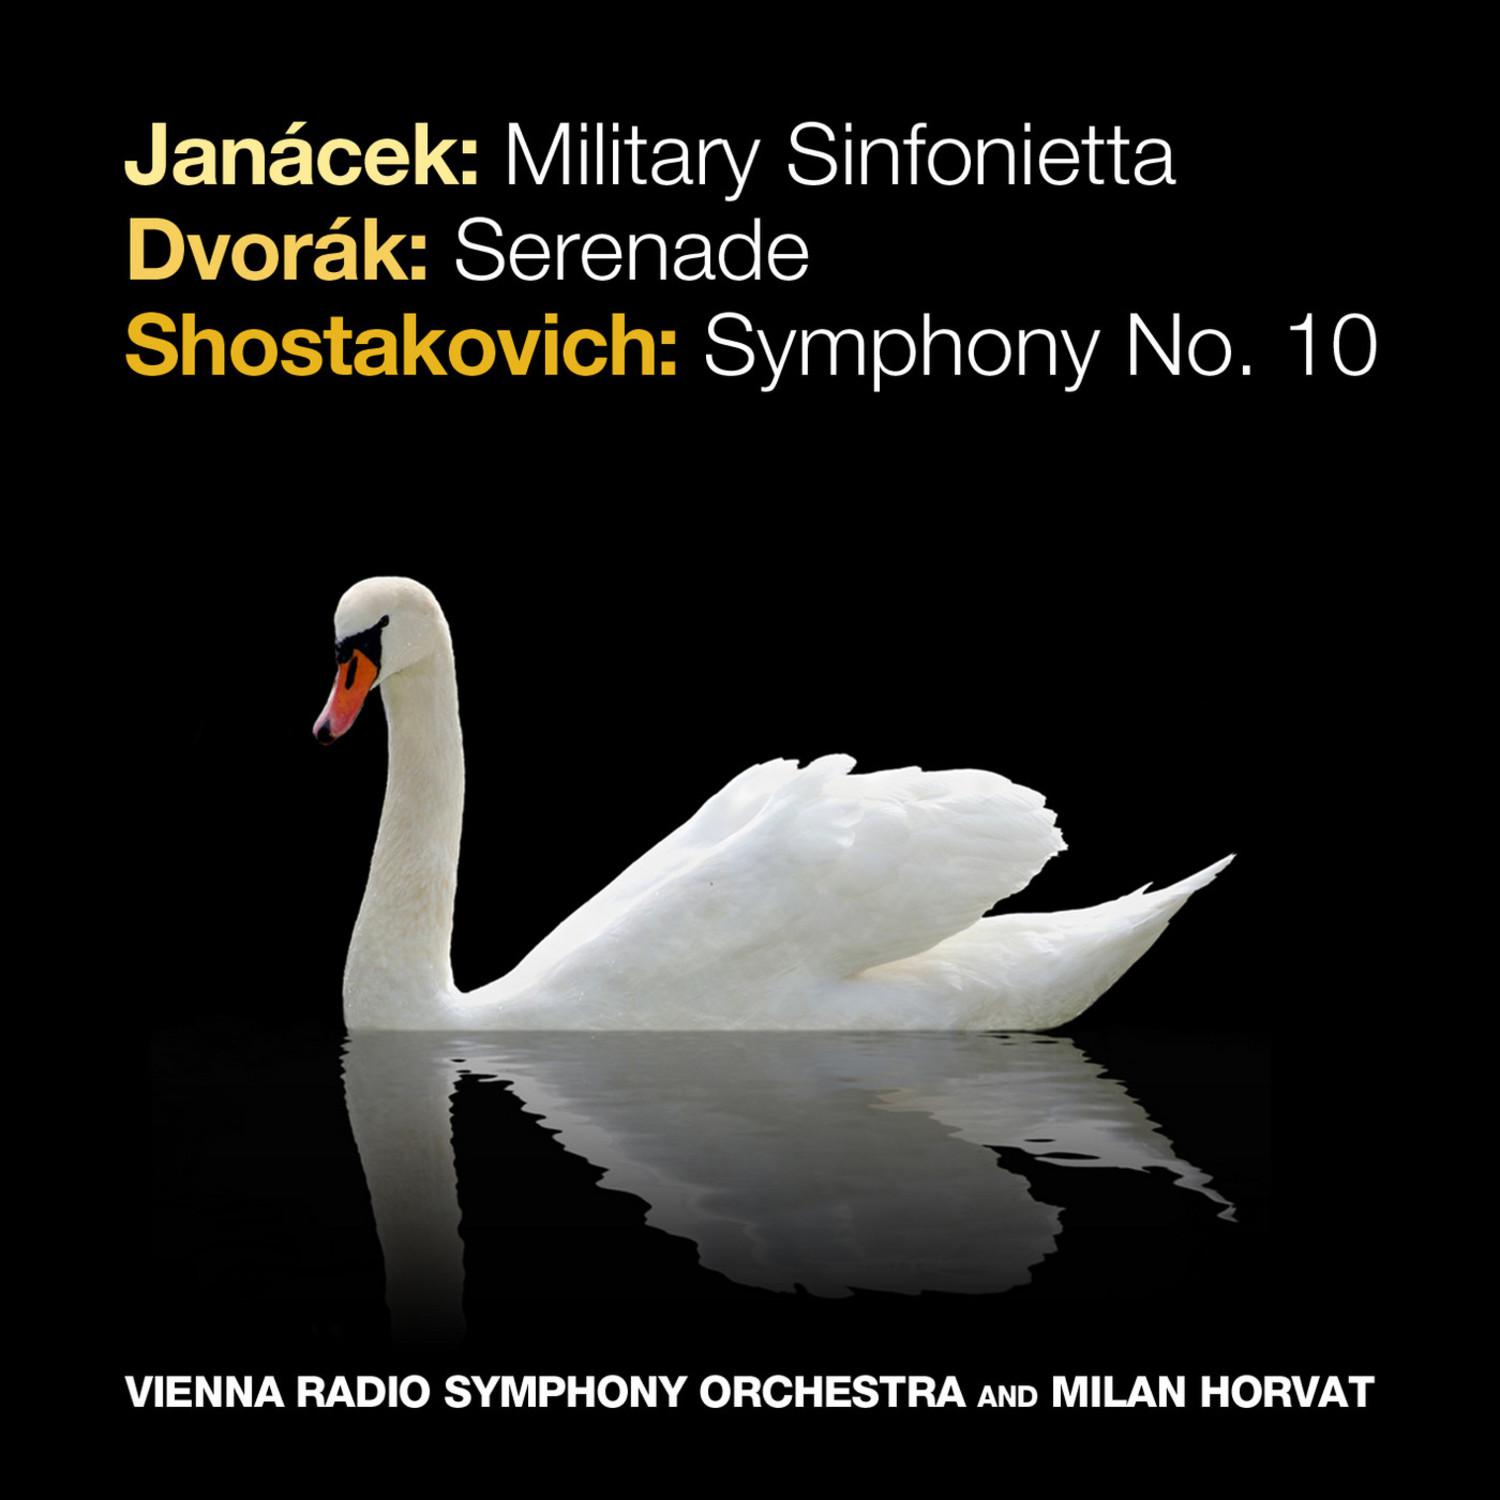 Military Sinfonietta, Op. 60: I. Fanfare: Allegretto